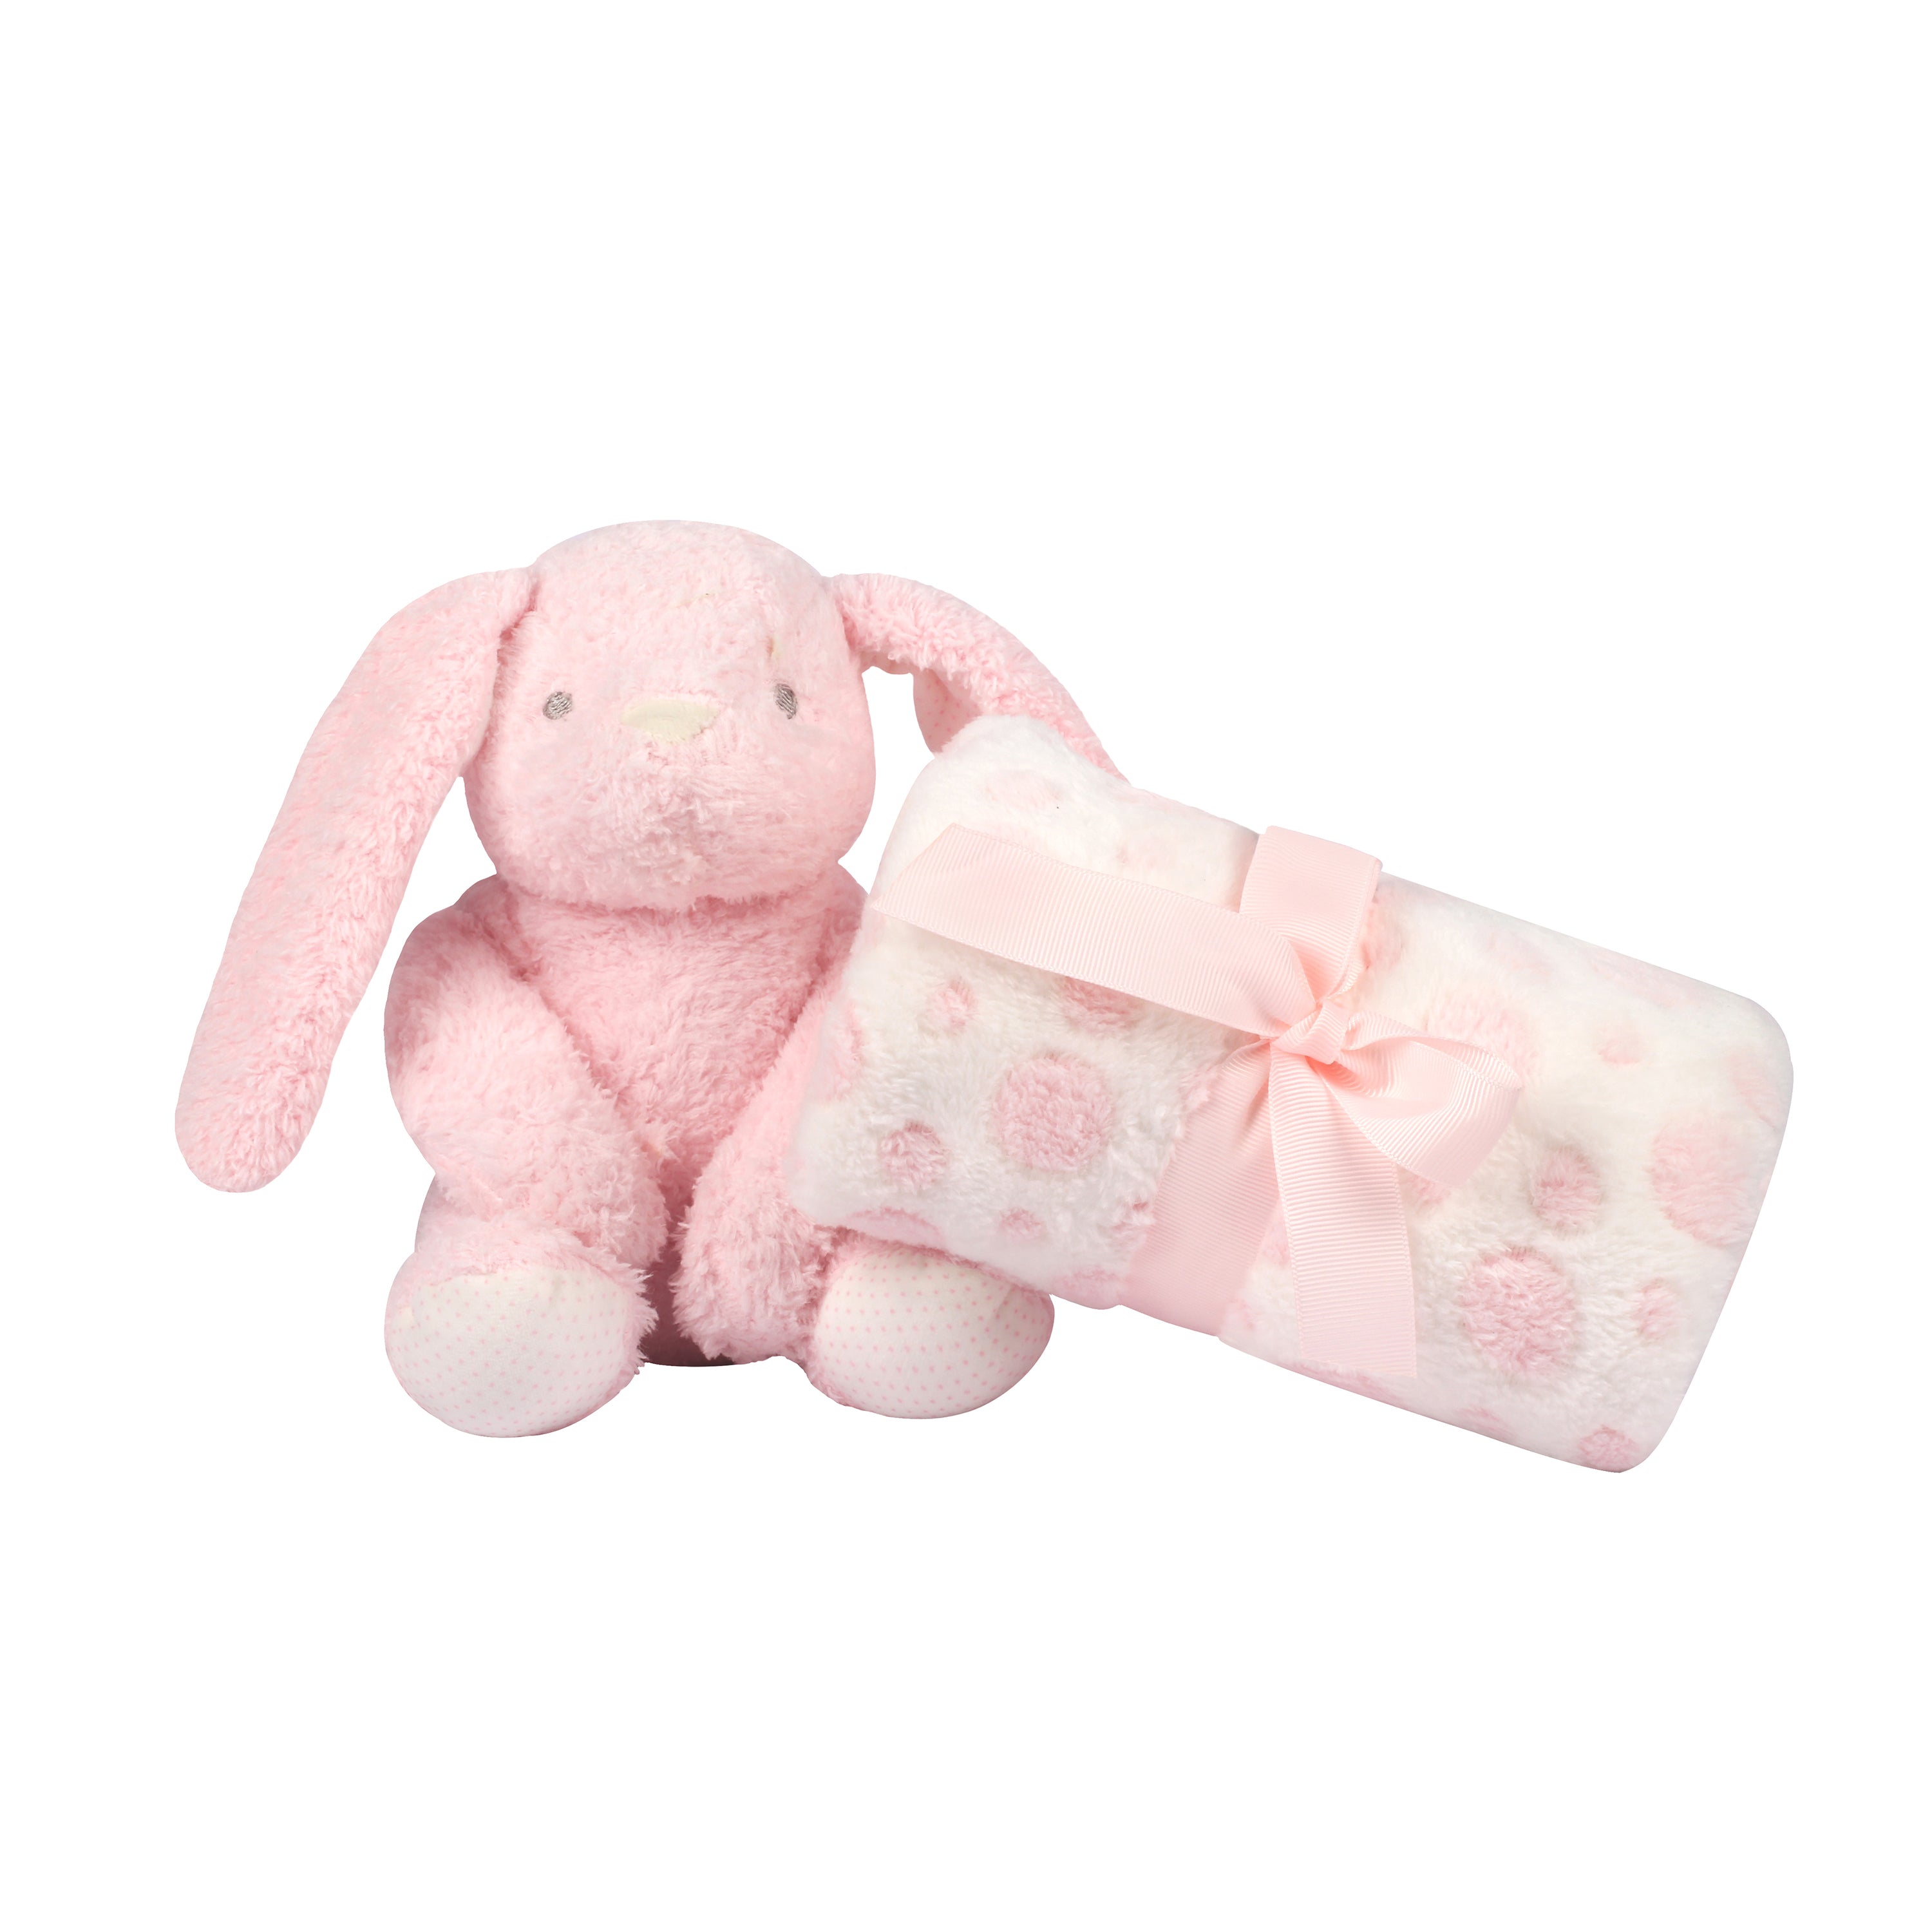 Abracadabra Toy With Blanket - Bunny